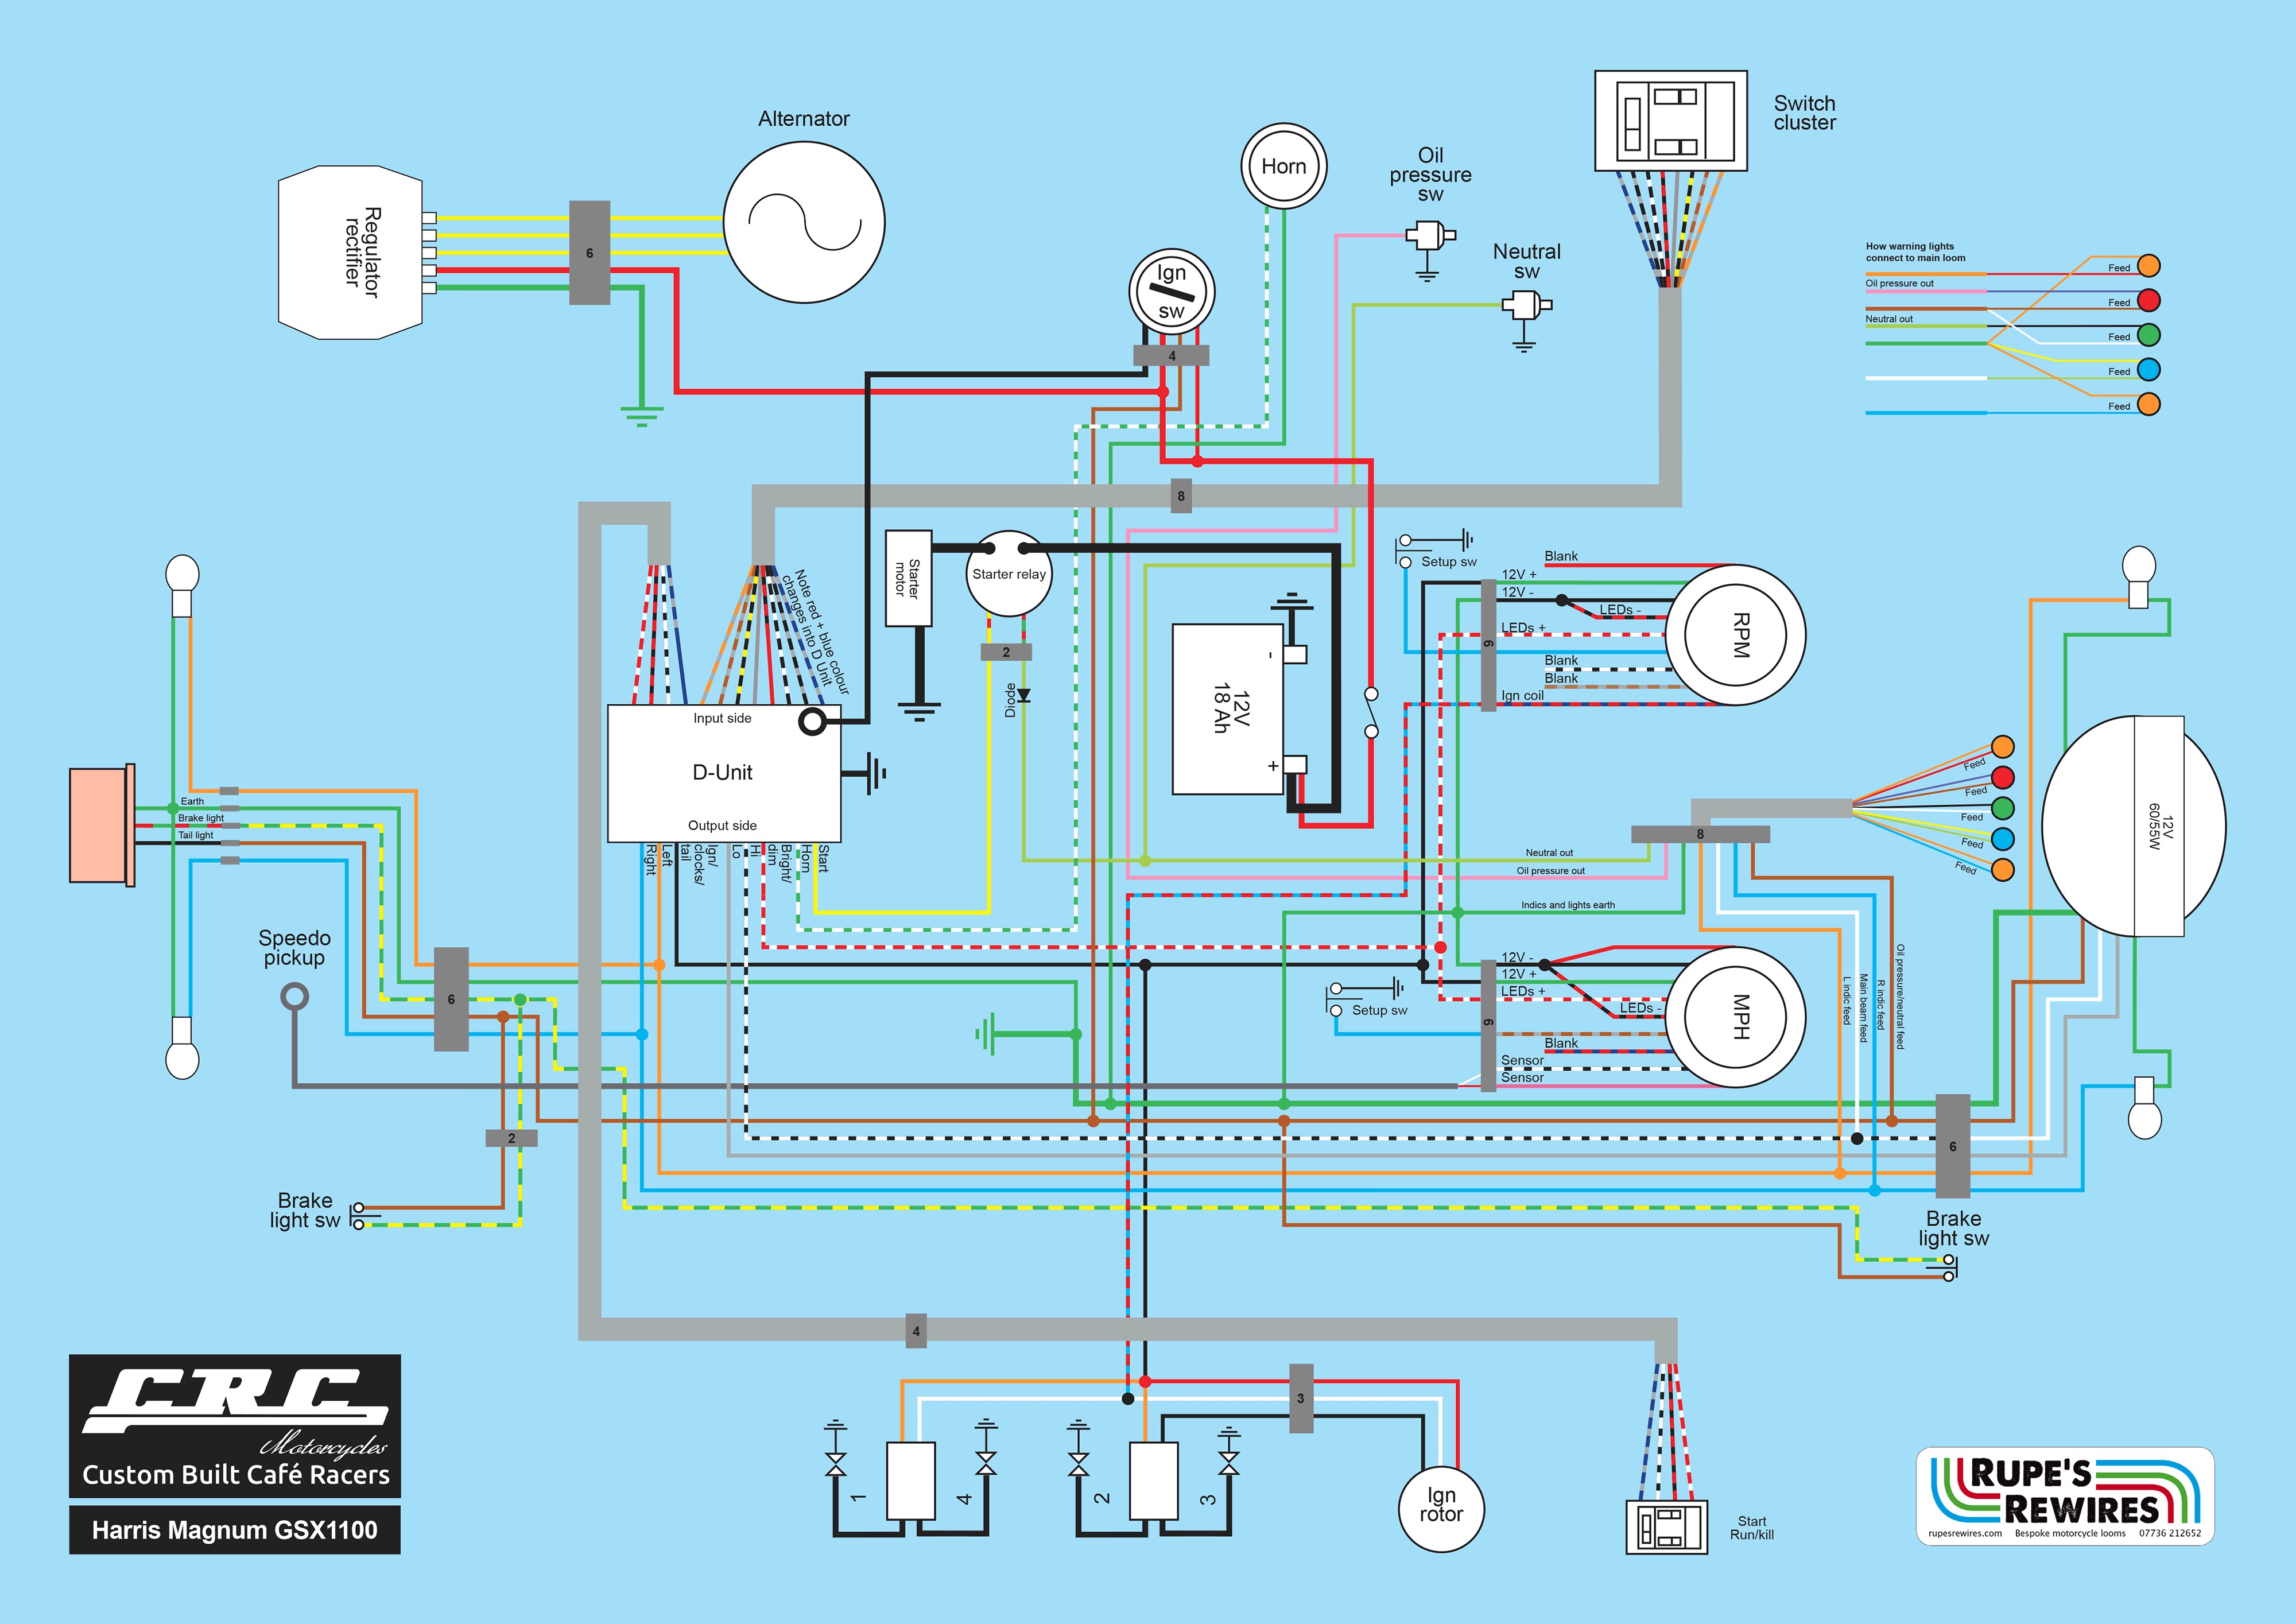 Mf 135 Diesel Wiring Diagram Harris Wiring Diagram Wiring Diagram Data Of Mf 135 Diesel Wiring Diagram